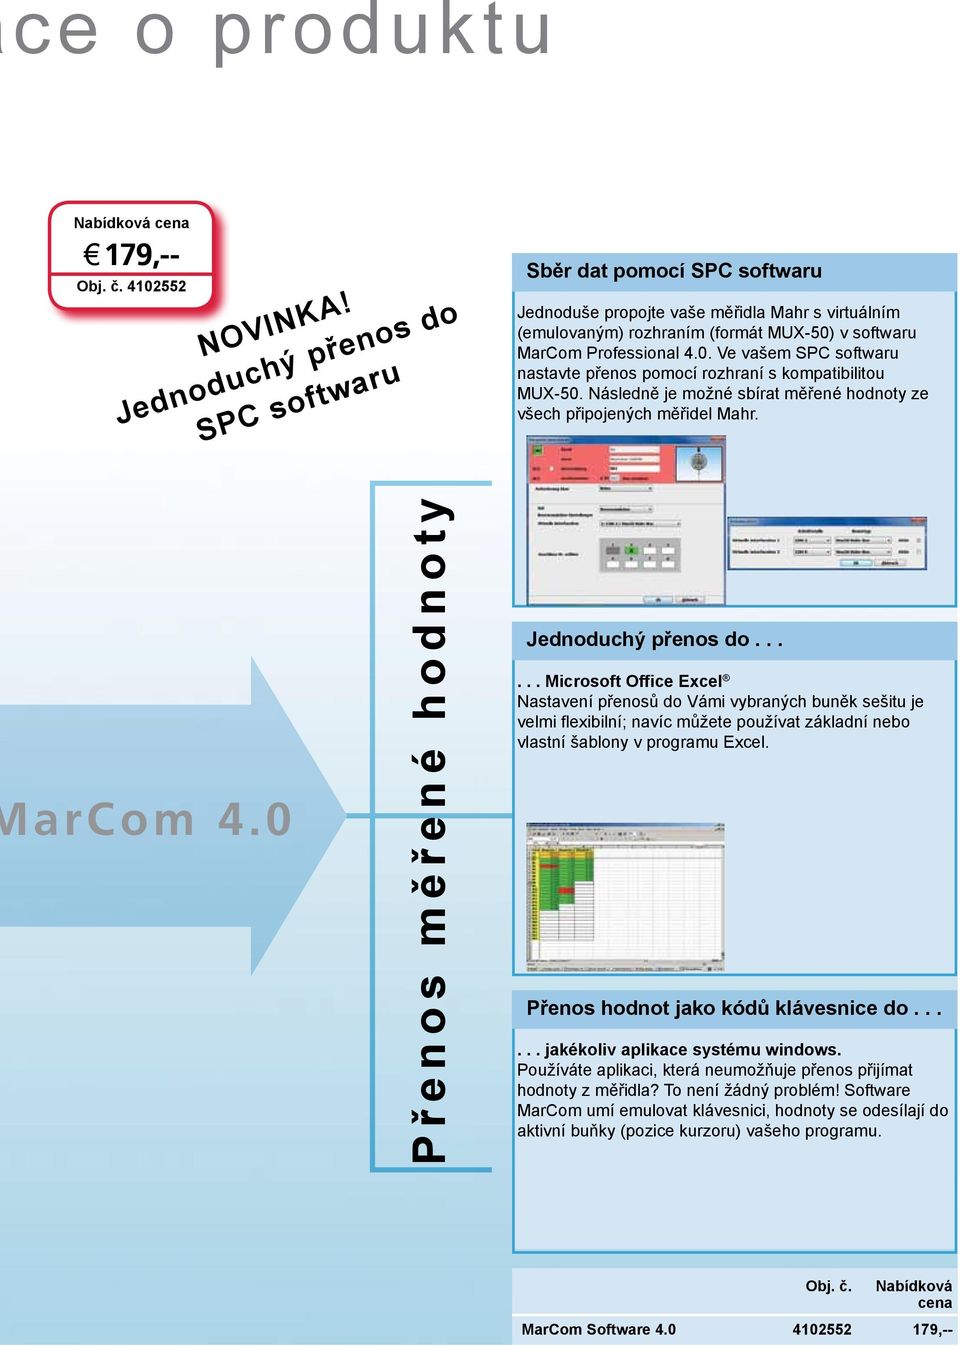 v softwaru MarCom Professional 4.0. Ve vašem SPC softwaru nastavte přenos pomocí rozhraní s kompatibilitou MUX-50. Následně je možné sbírat měřené hodnoty ze všech připojených měřidel Mahr. arcom 4.